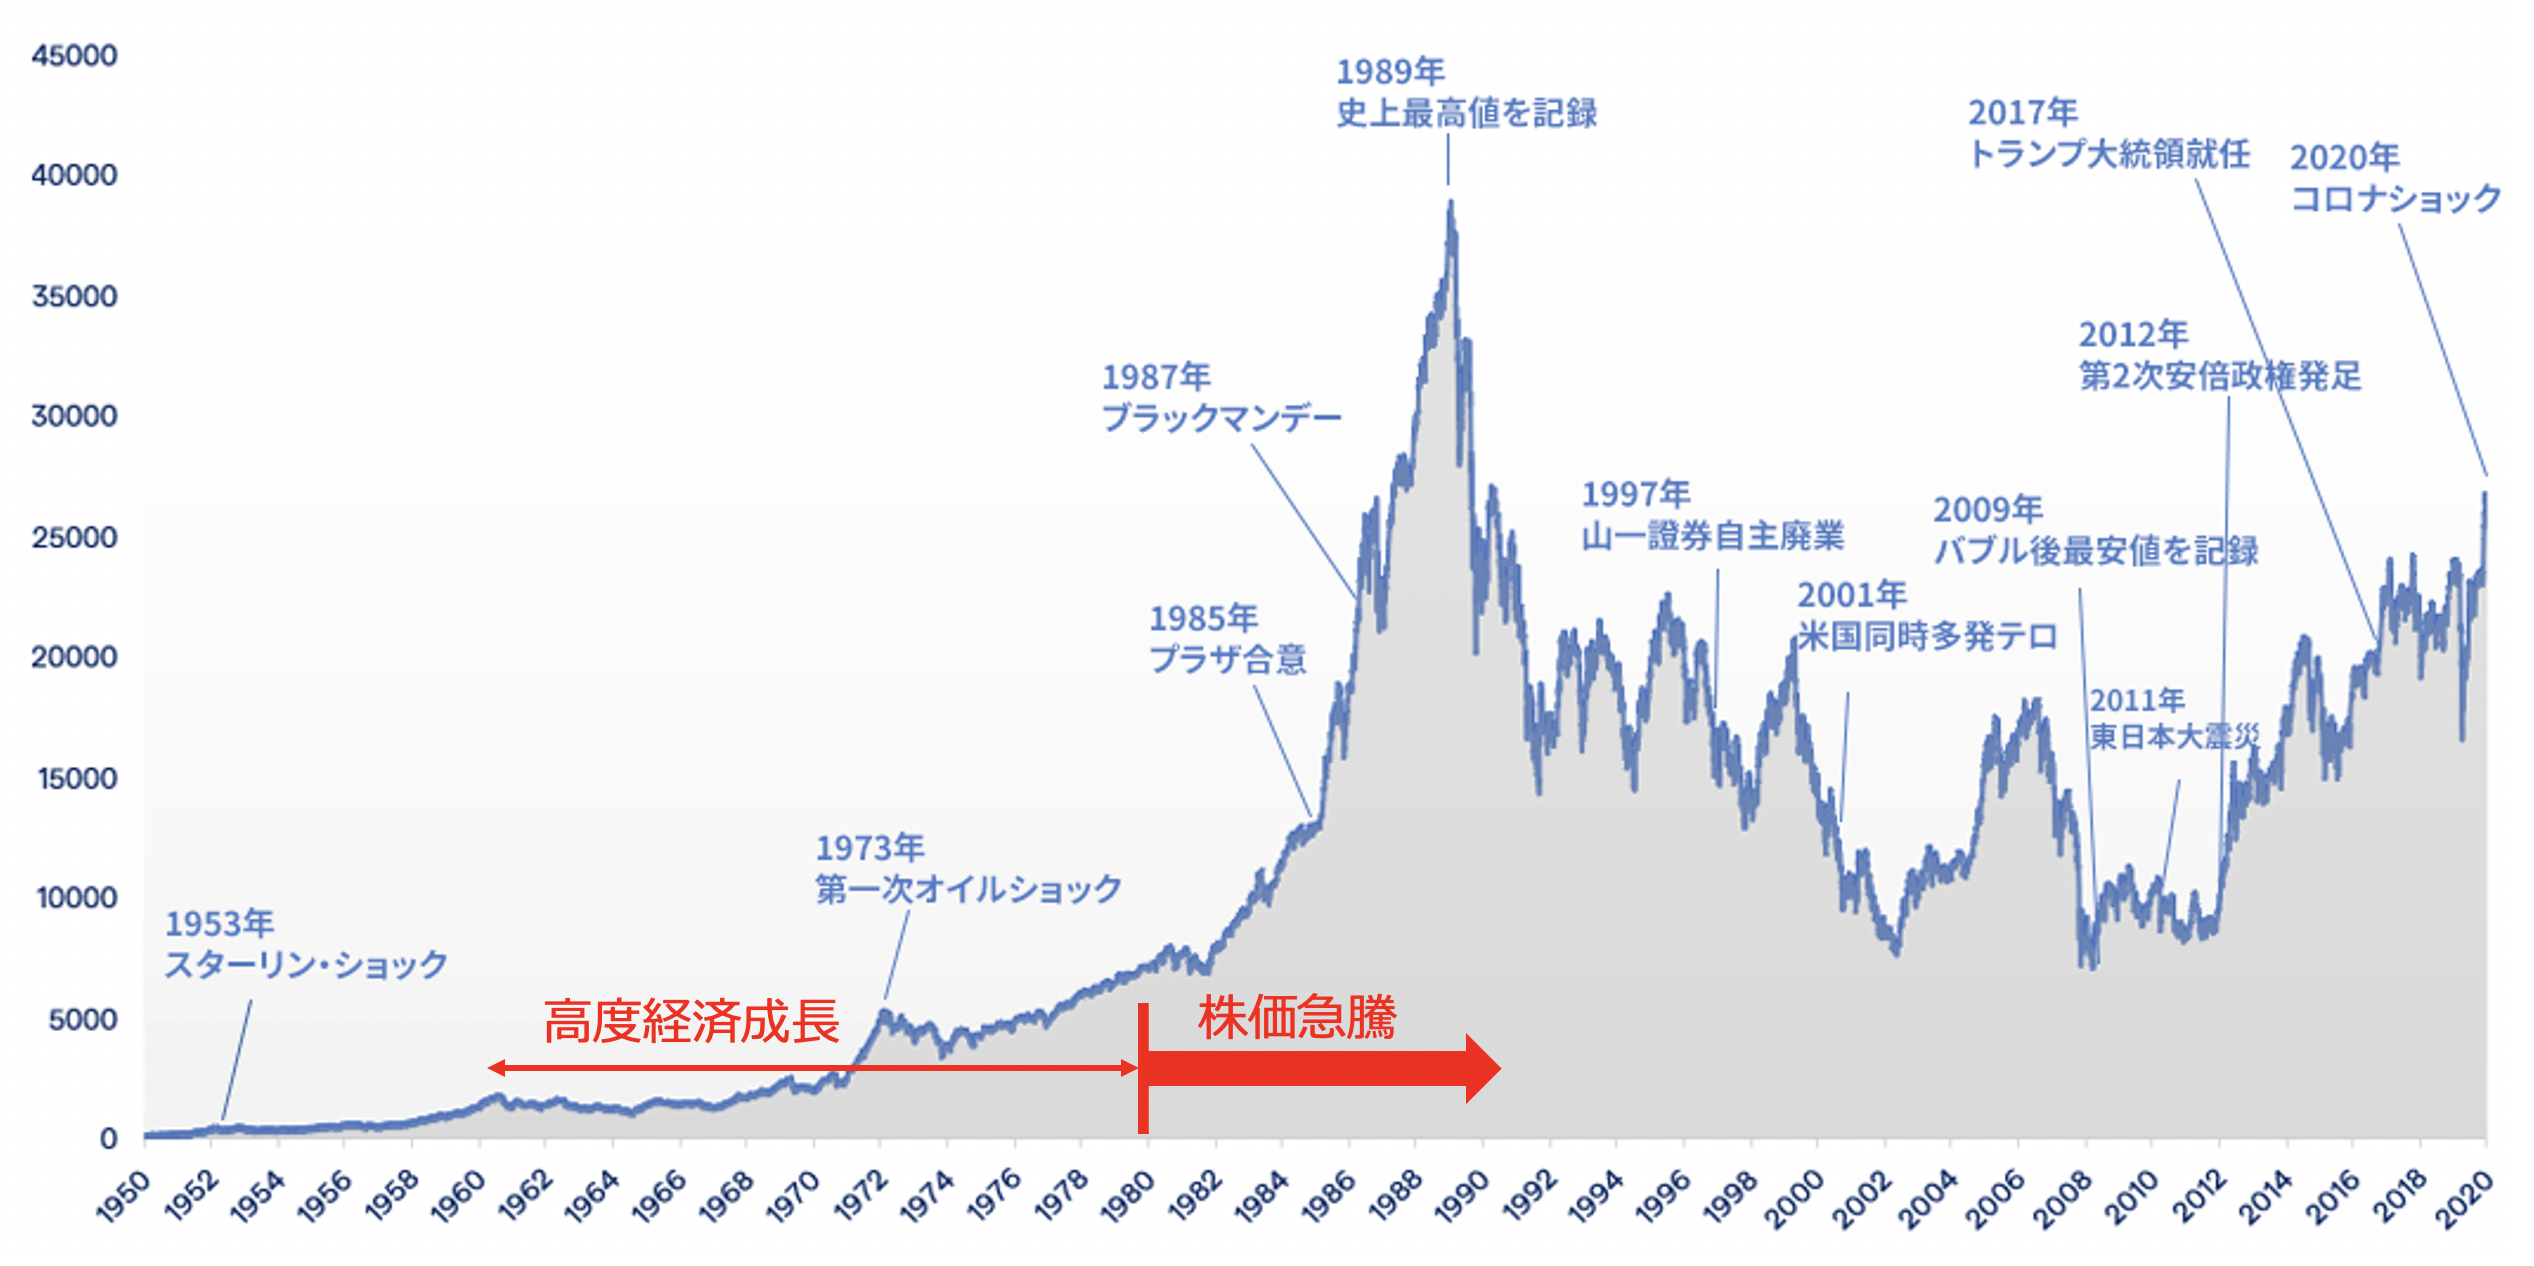 日経平均株価は上昇を始めたのは1980年代